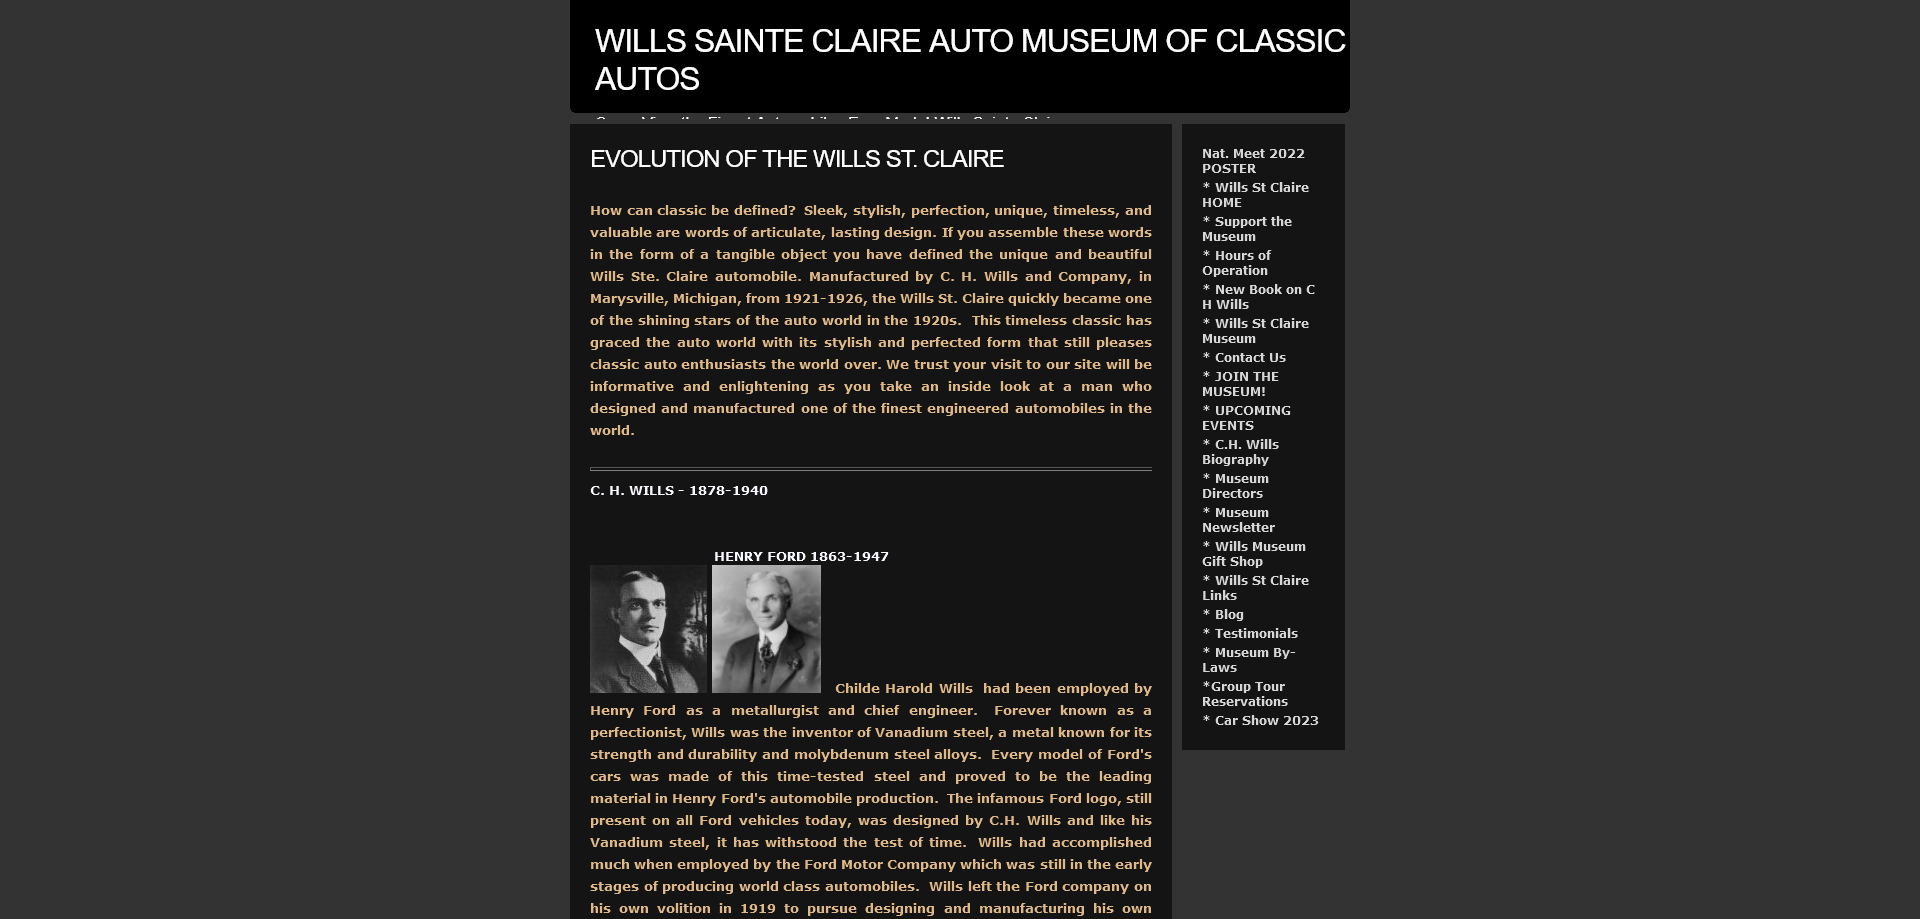 Wills Sainte Claire Auto Museum